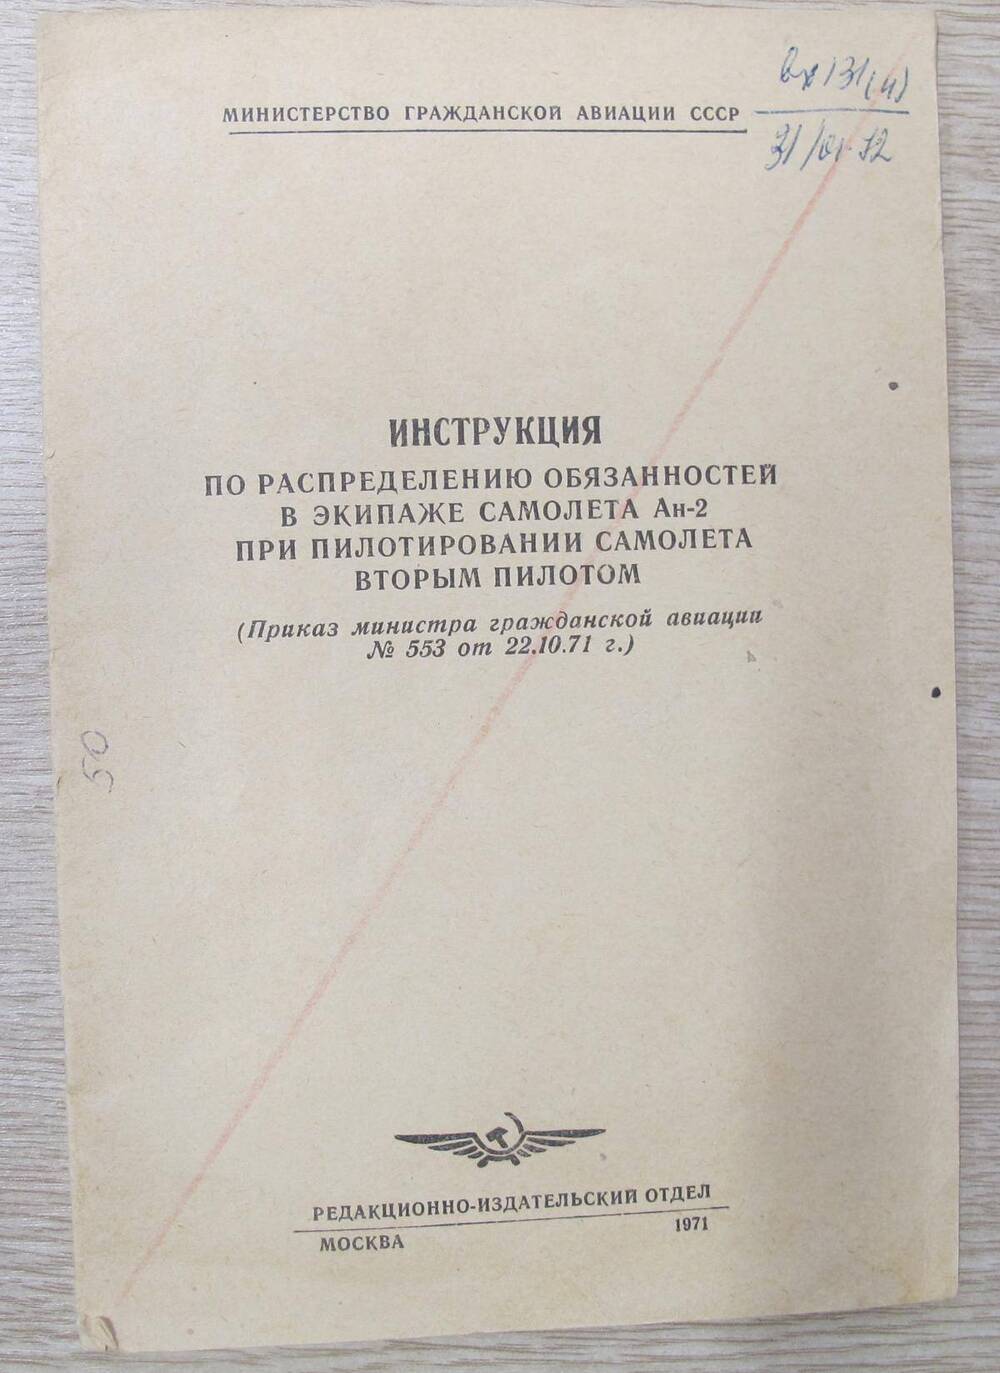 Брошюра Инструкция по распределению обязанностей в экипаже Ан-2 при пилотировании самолета вторым пилотом.